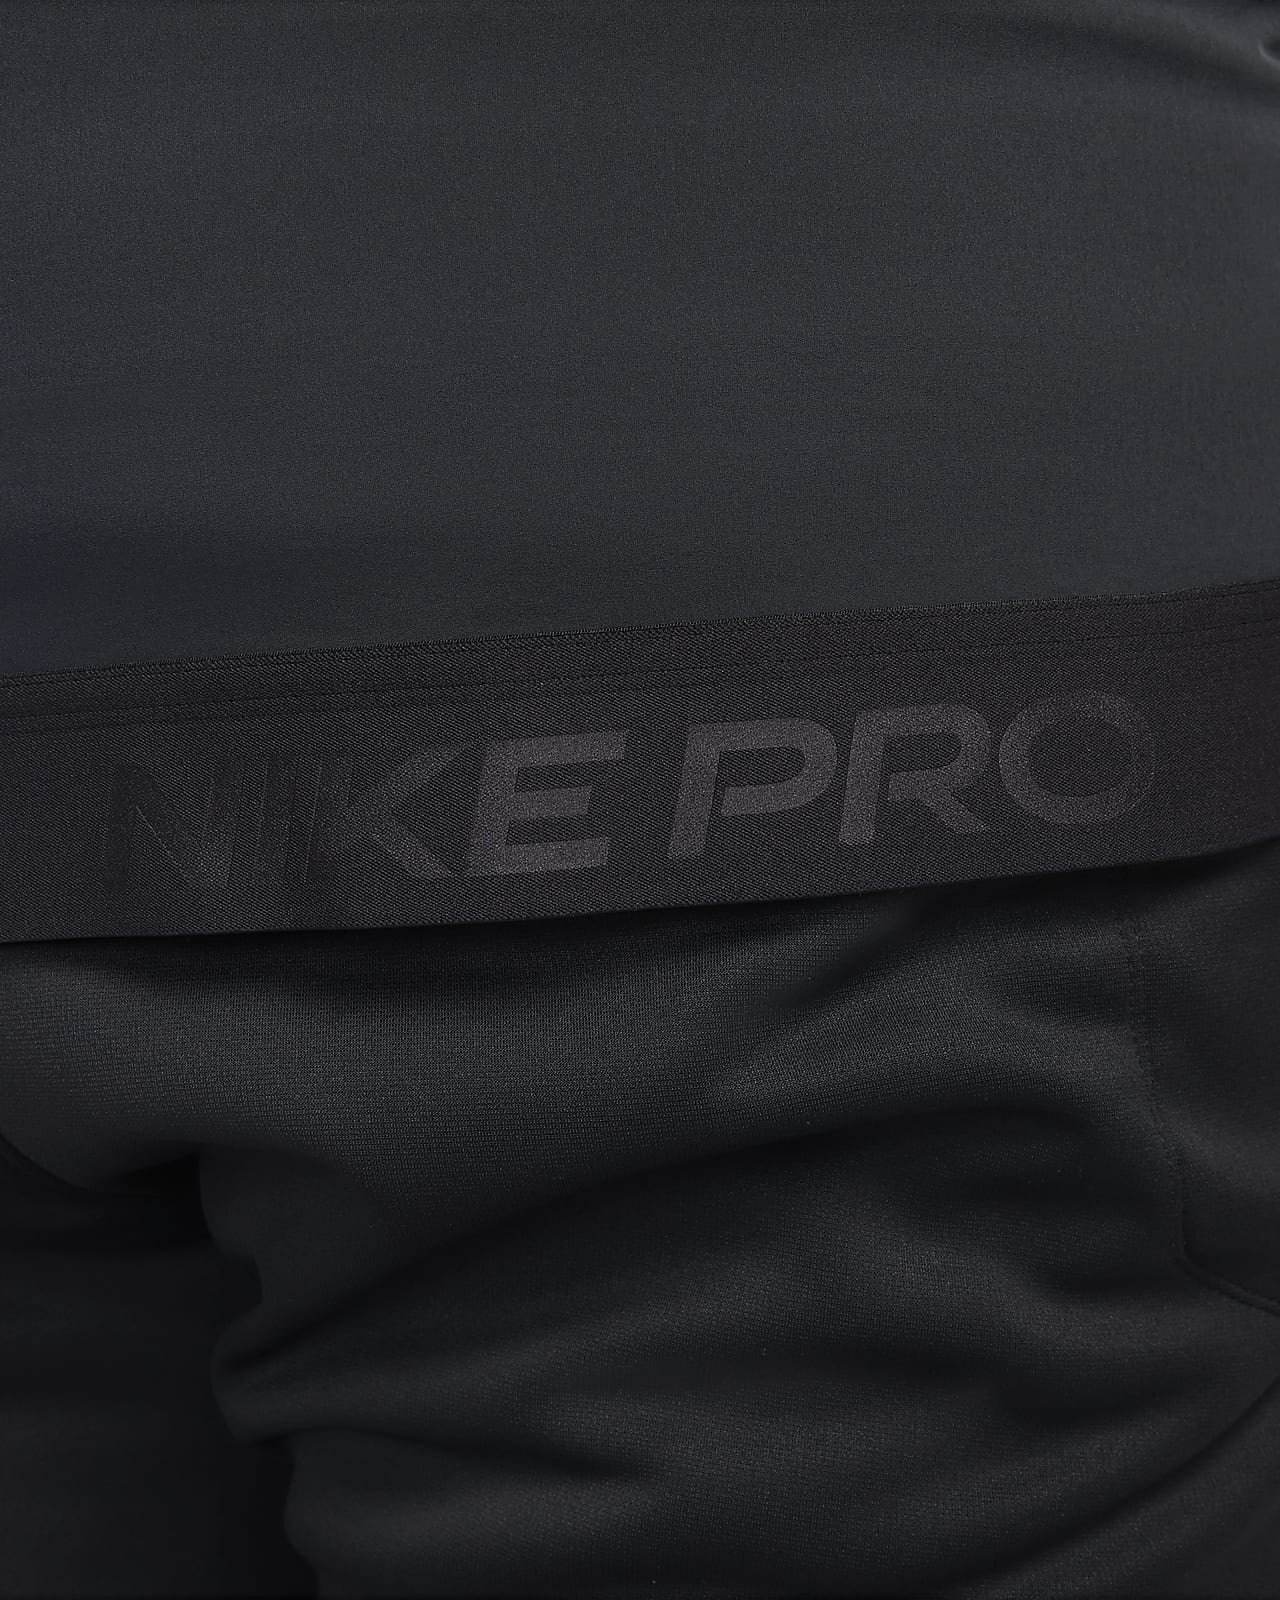 Nike Pro Dri-FIT Flex Vent Max Men's Full-Zip Hooded Training Jacket. Nike  IL